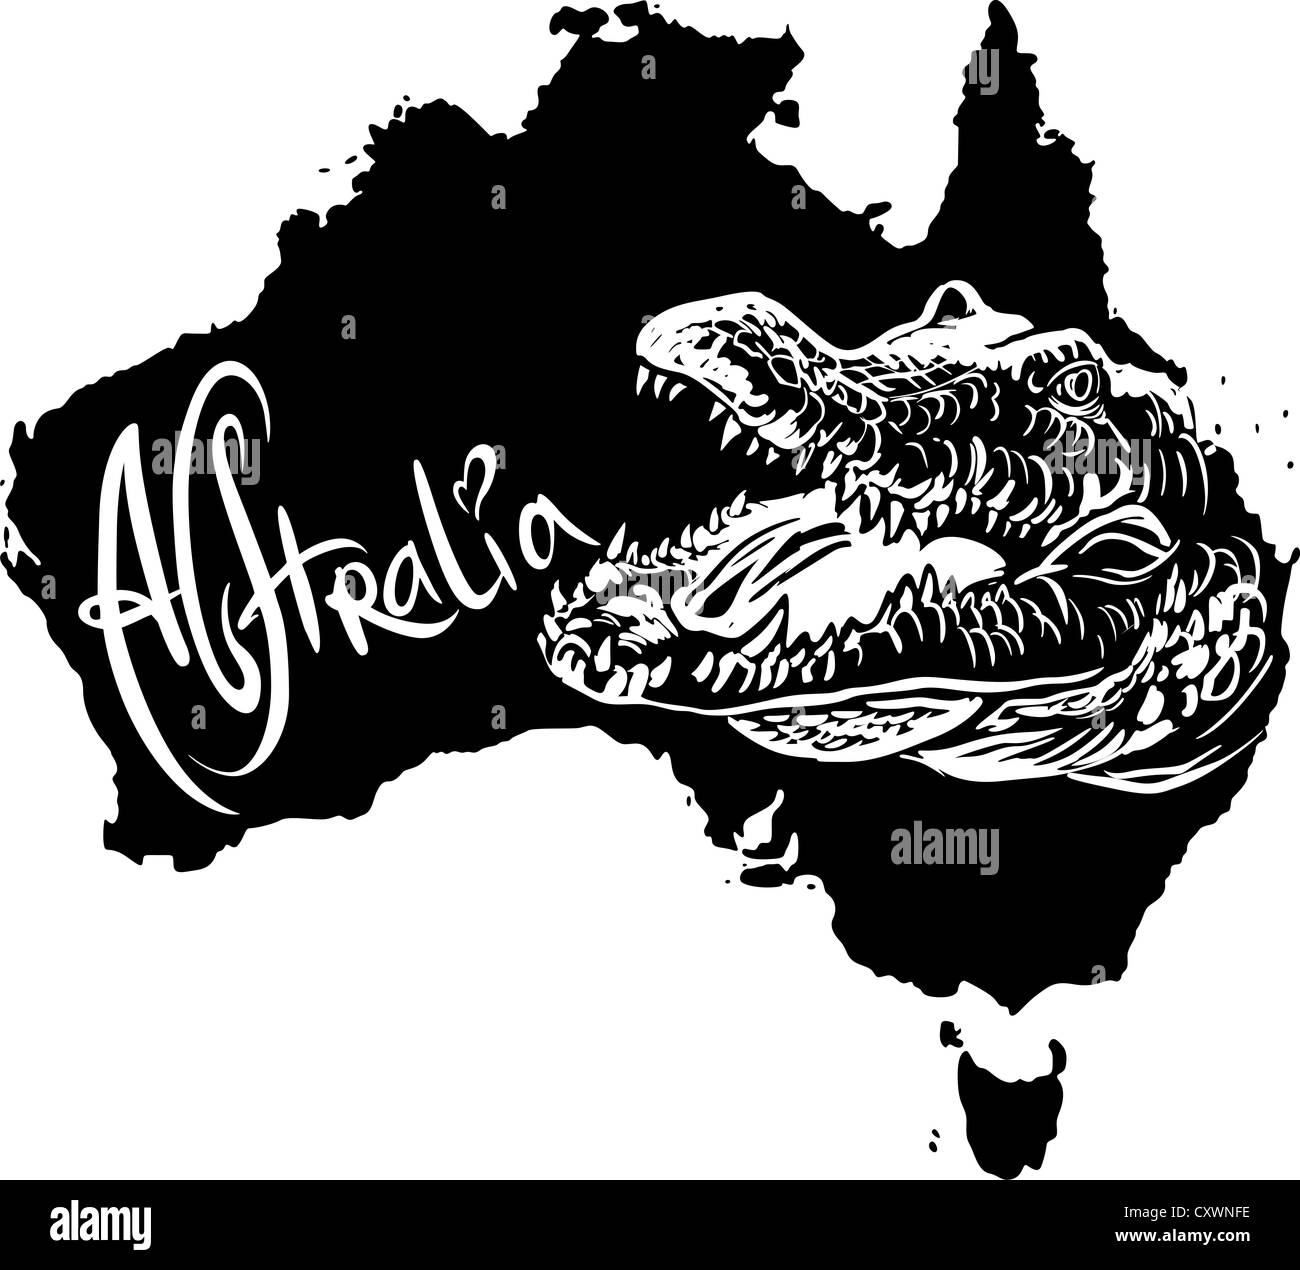 Crocodile sur la carte de l'Australie. Vector illustration noir et blanc. Banque D'Images